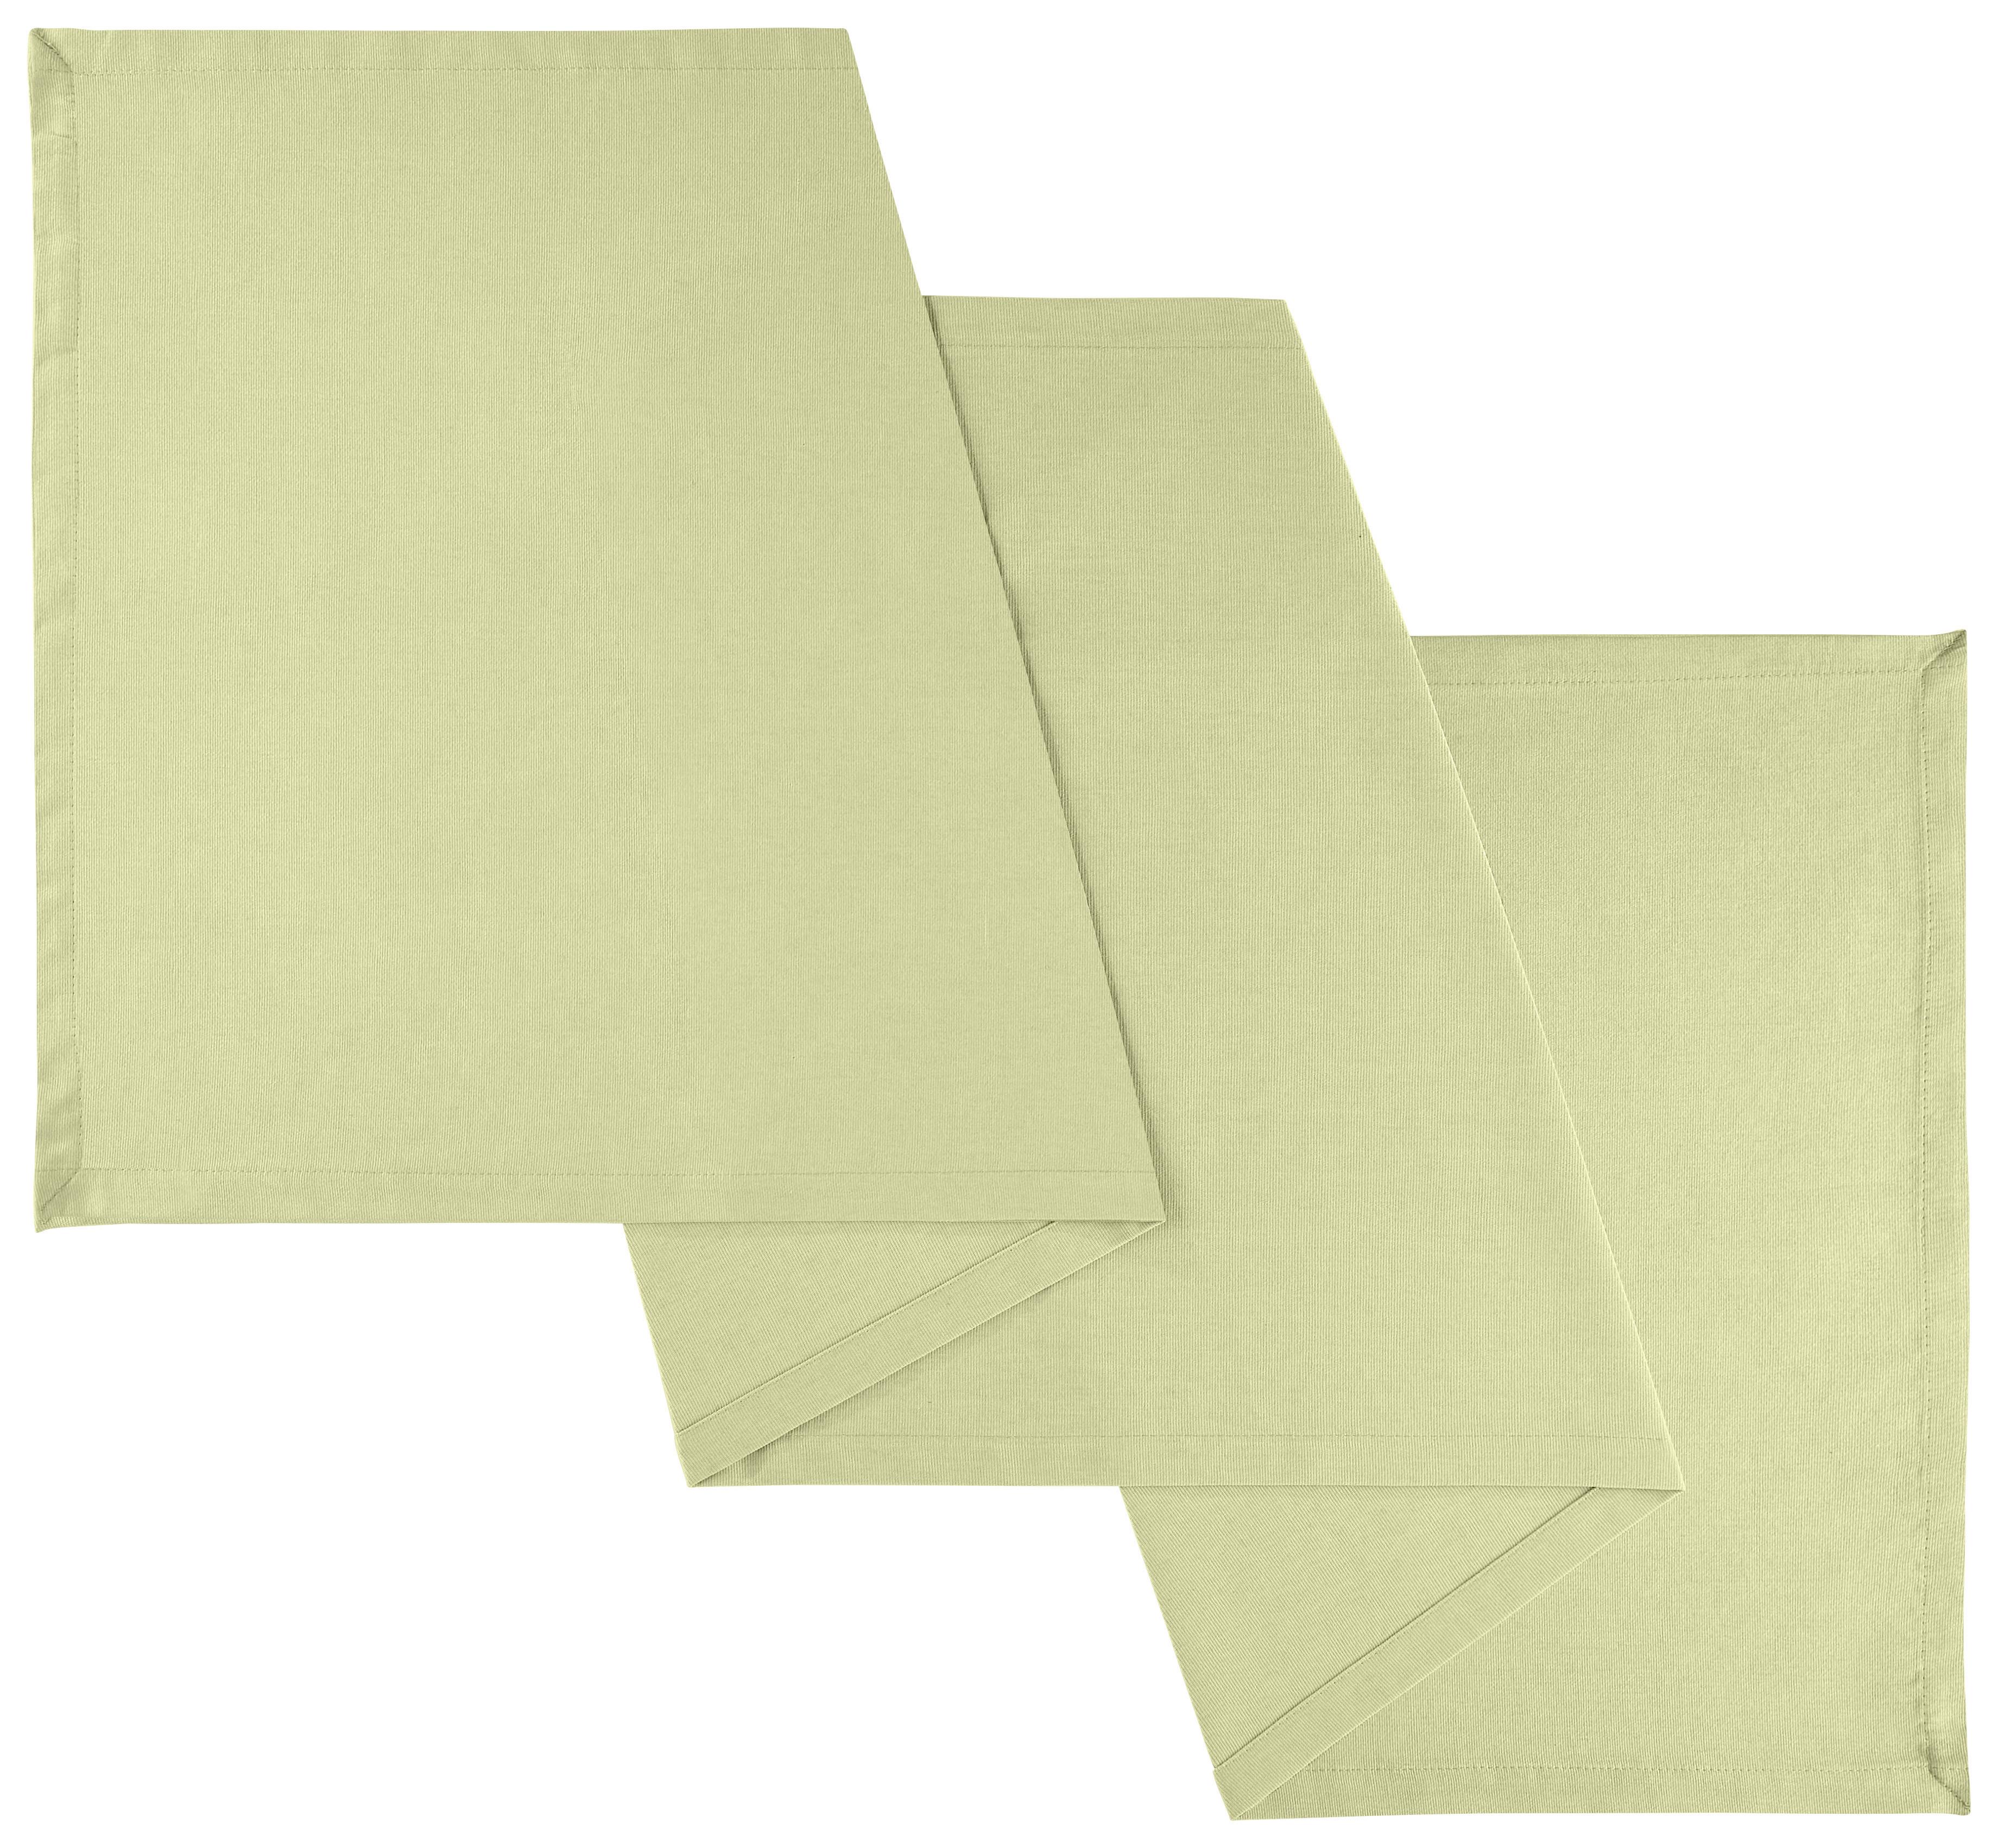 Nadprt Steffi - svetlo zelena, tekstil (45/150cm) - Modern Living